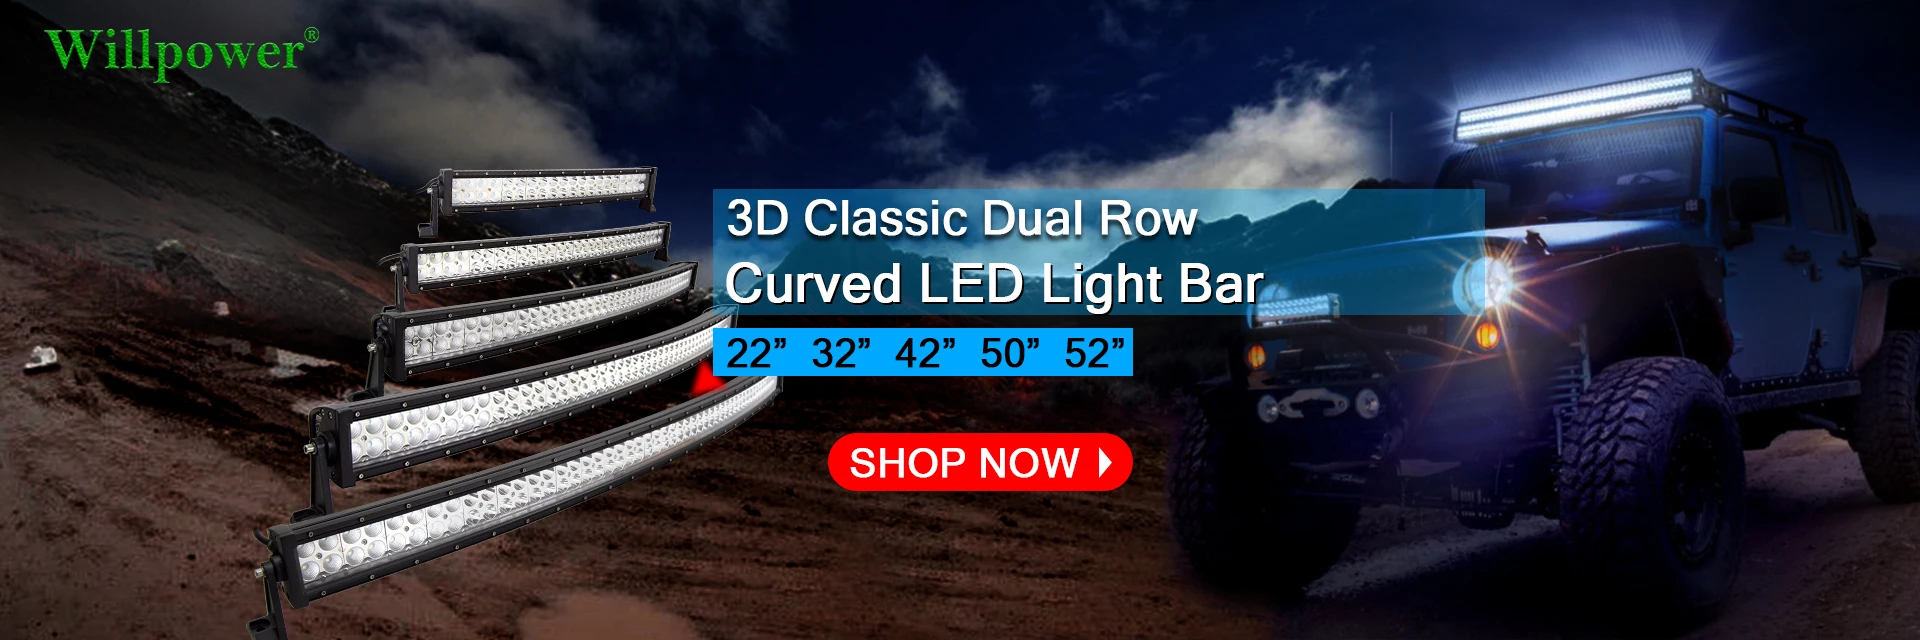 Willpower Barre Lumineuse LED, 52 pouces 675W Spot et Inondation Combinée  Barre de LED avec 12V